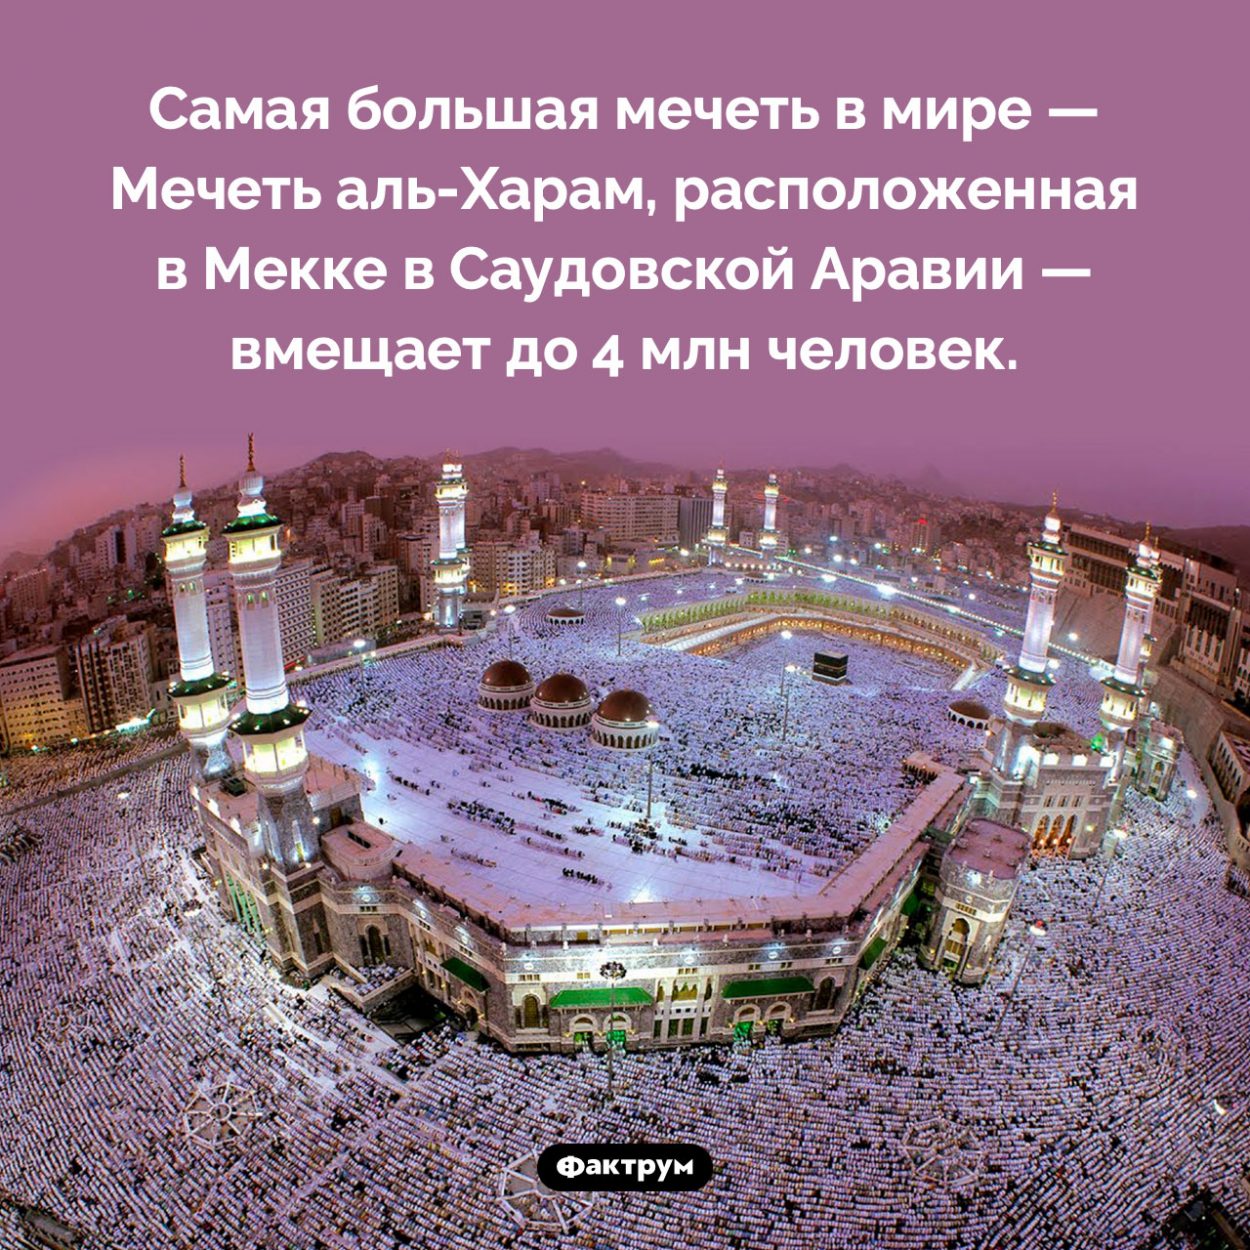 Самая большая мечеть в мире. Самая большая мечеть в мире — Мечеть аль-Харам, расположенная в Мекке в Саудовской Аравии — вмещает до 4 млн человек.